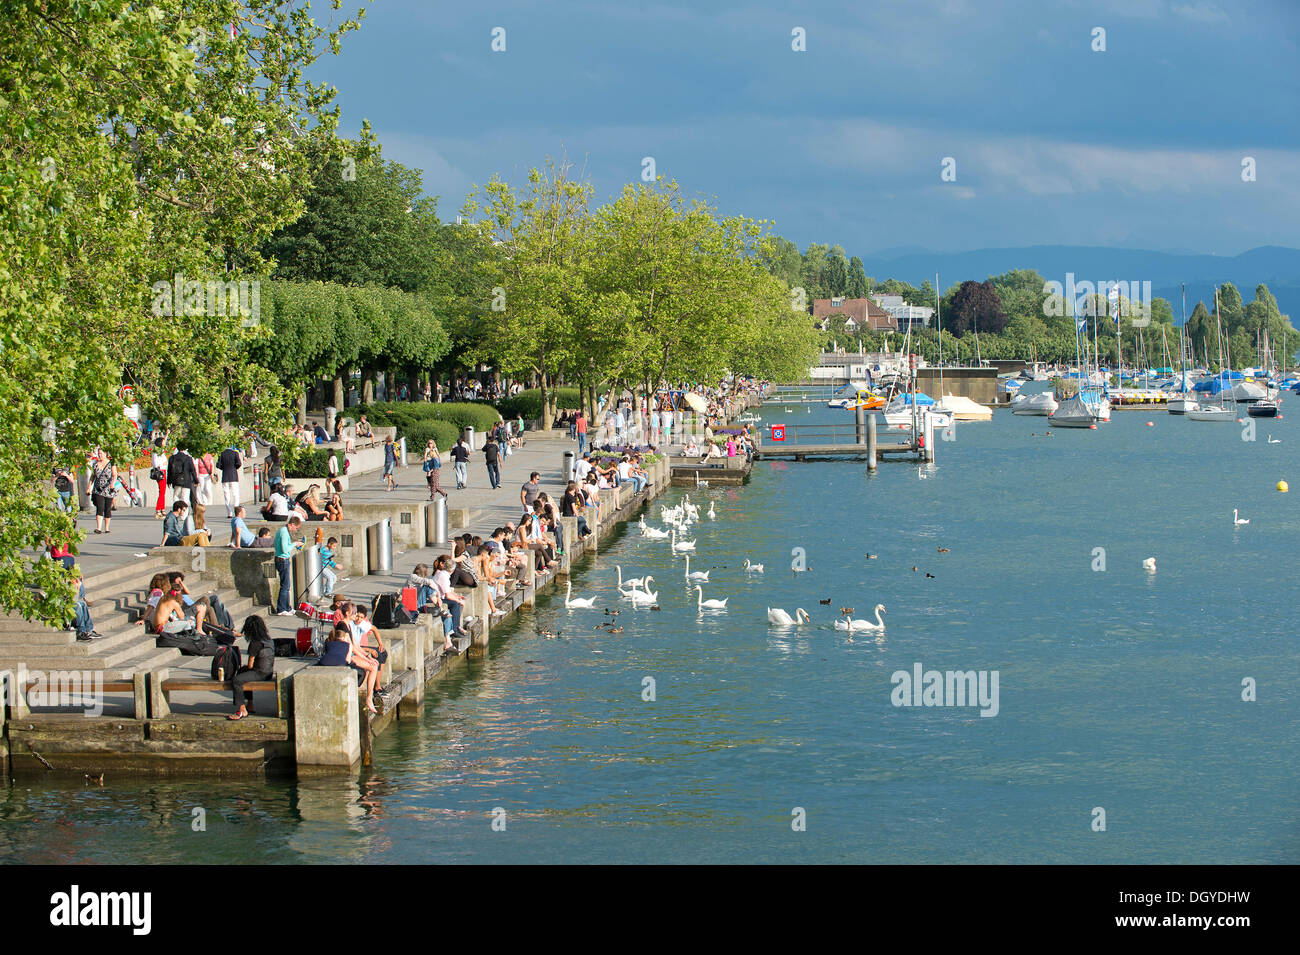 El lago de Zurich, Utoquai quay, Zurich, Suiza, Europa Foto de stock